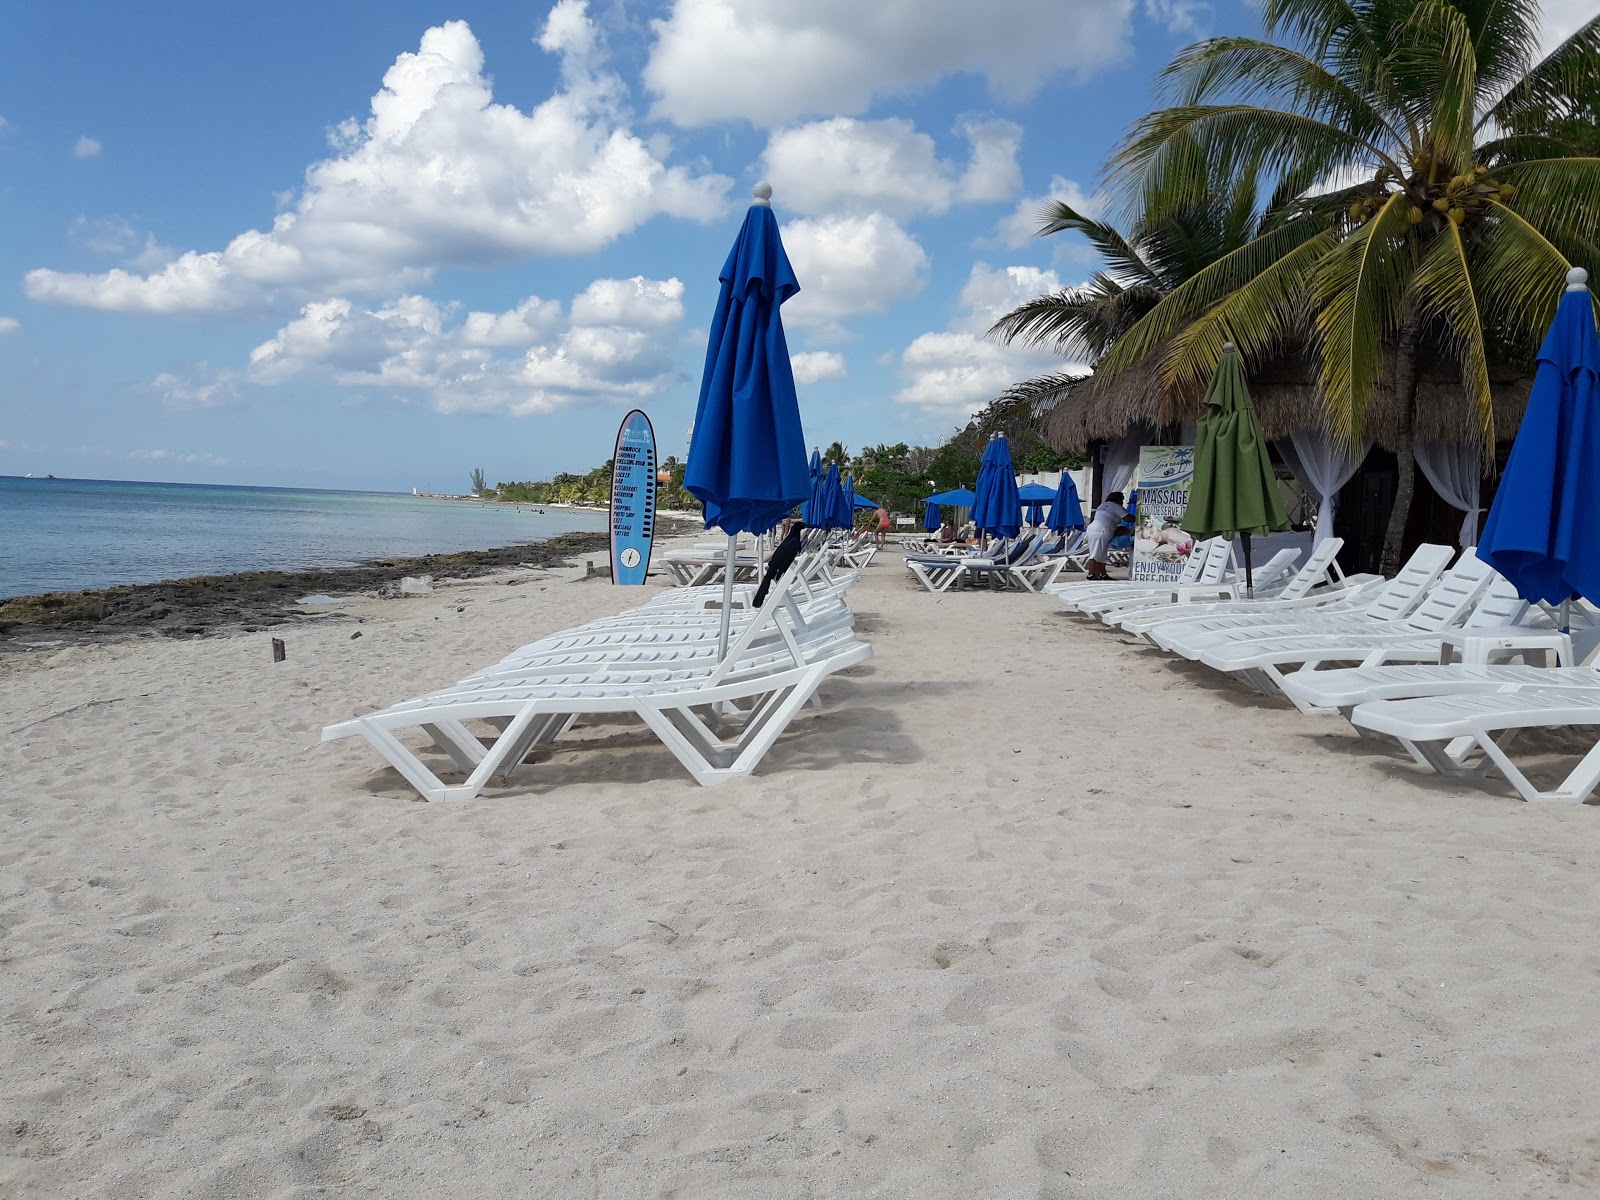 Foto af Playa Uvas - populært sted blandt afslapningskendere